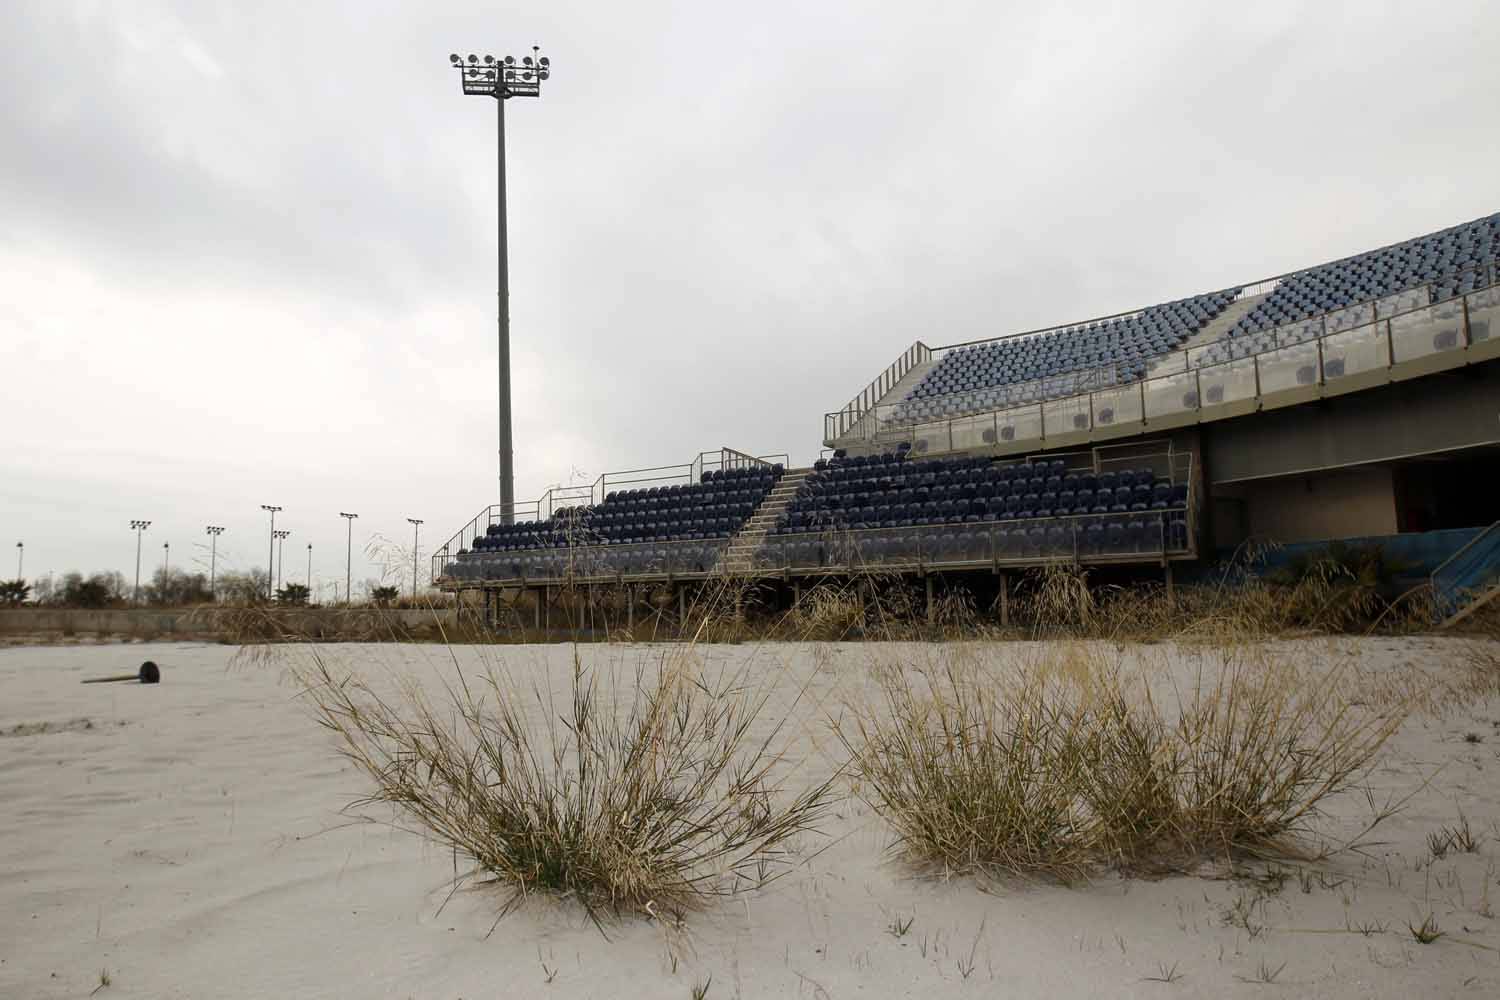 Заброшенный стадион. Олимпийская деревня Афины 2004. Олимпийские объекты Сочи сейчас разруха. Заброшенные стадионы в Сочи после олимпиады.